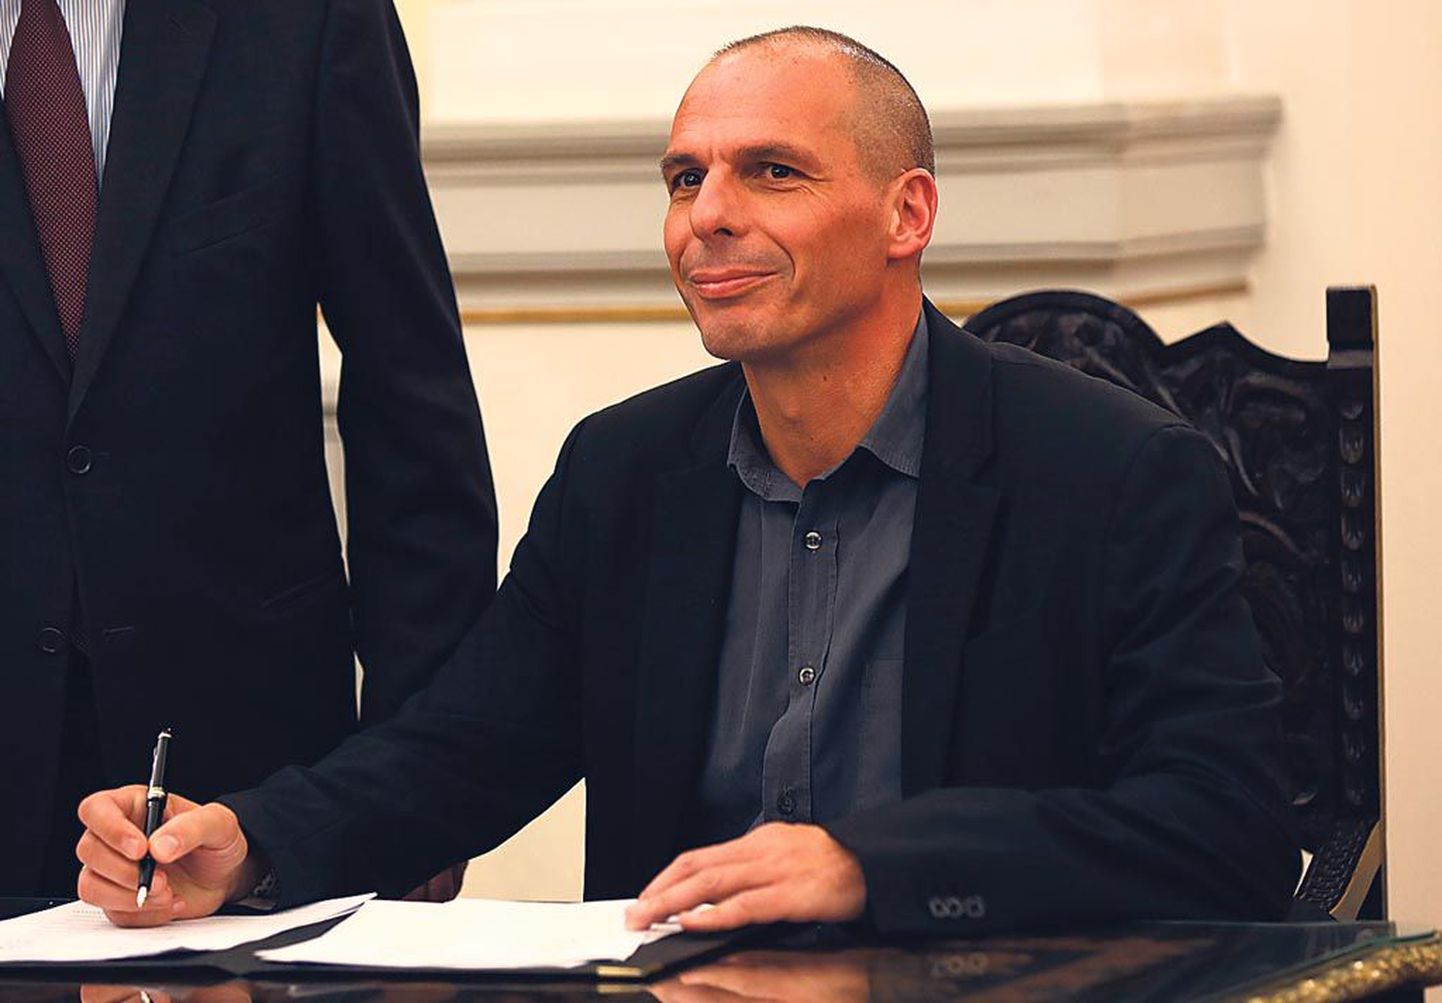 Kreeka rahandusminister Yanis Varoufakis on end sel nädalal tutvustanud Euroopa võlausaldajatele.